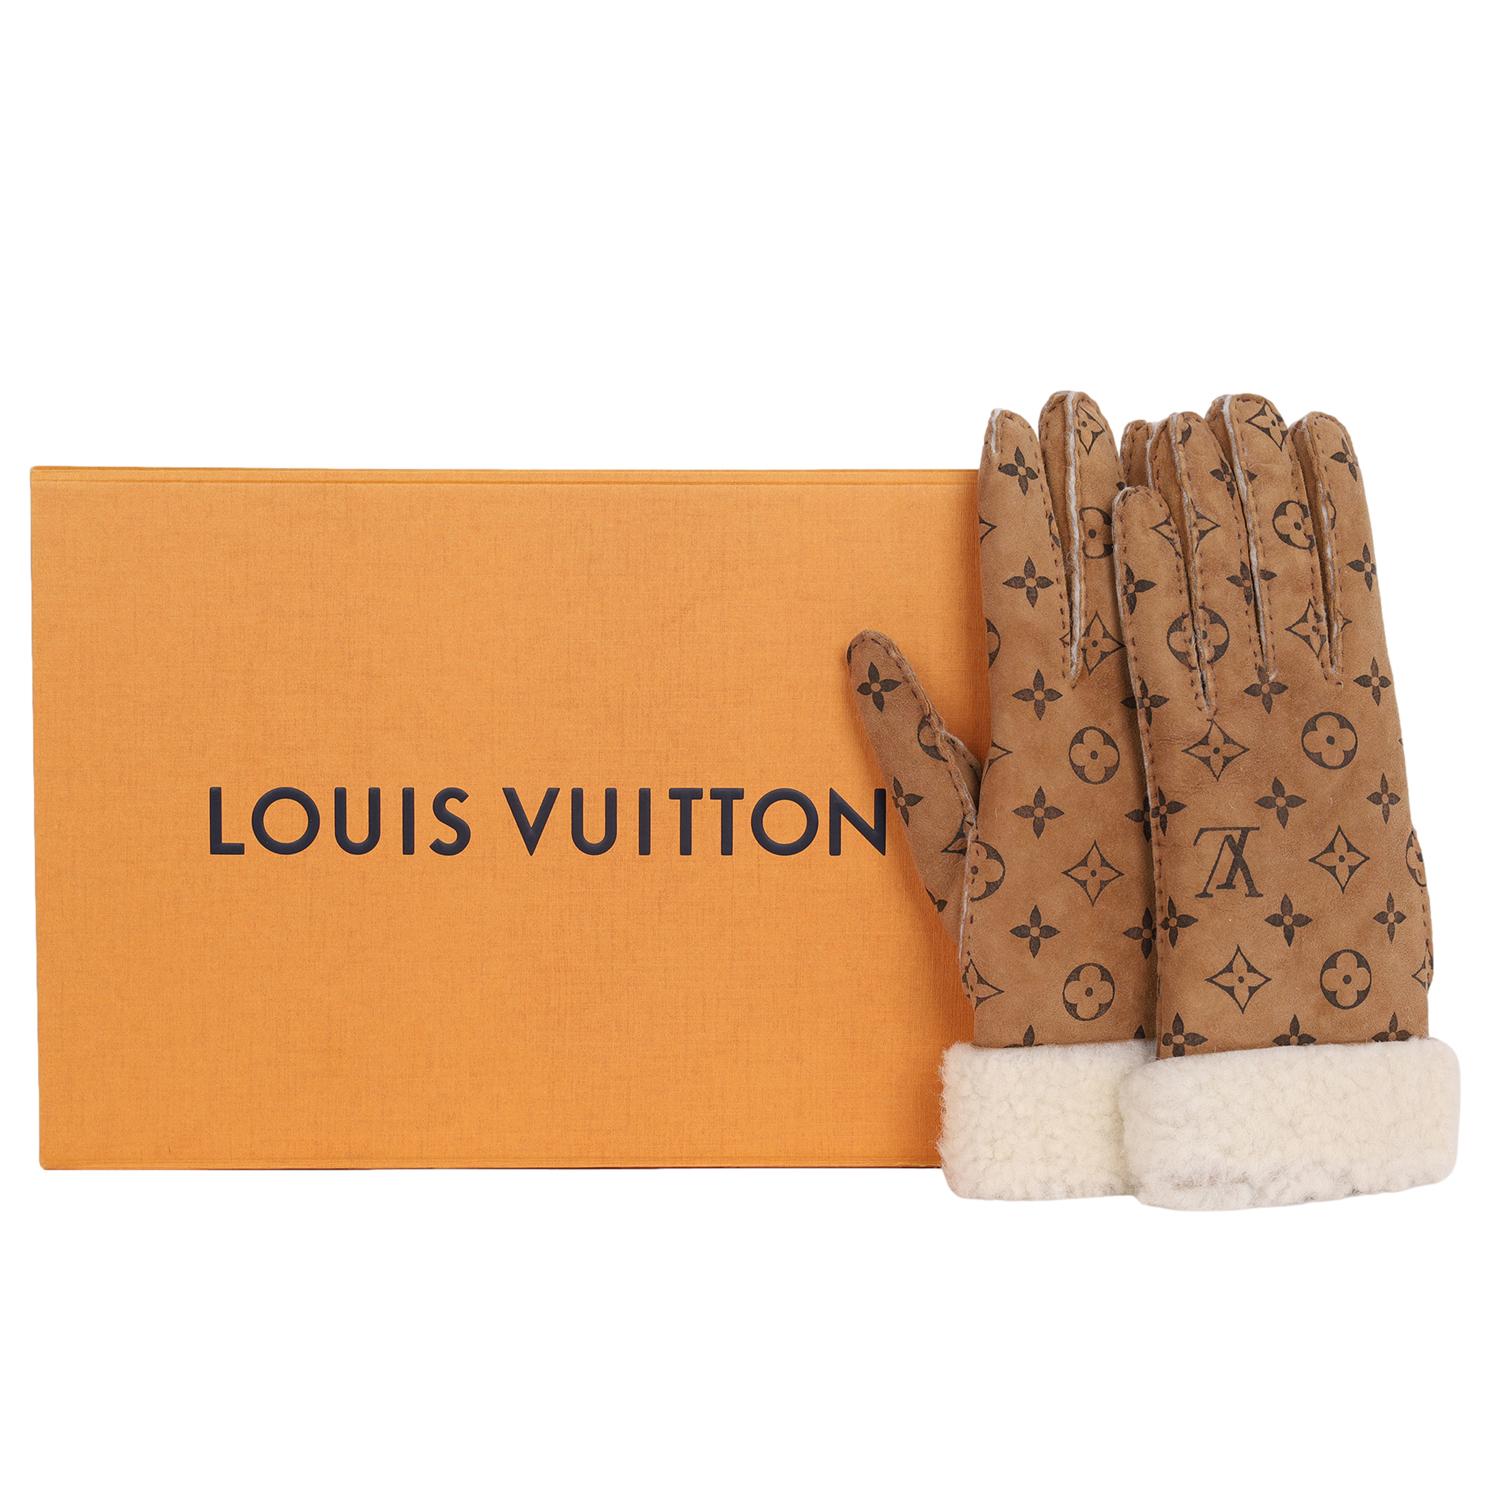 Authentische, gebrauchte Louis Vuitton Gant Monogram Shearling Mouton Handschuhe. Größe 7.5

Ausgezeichneter Zustand!

9,5 